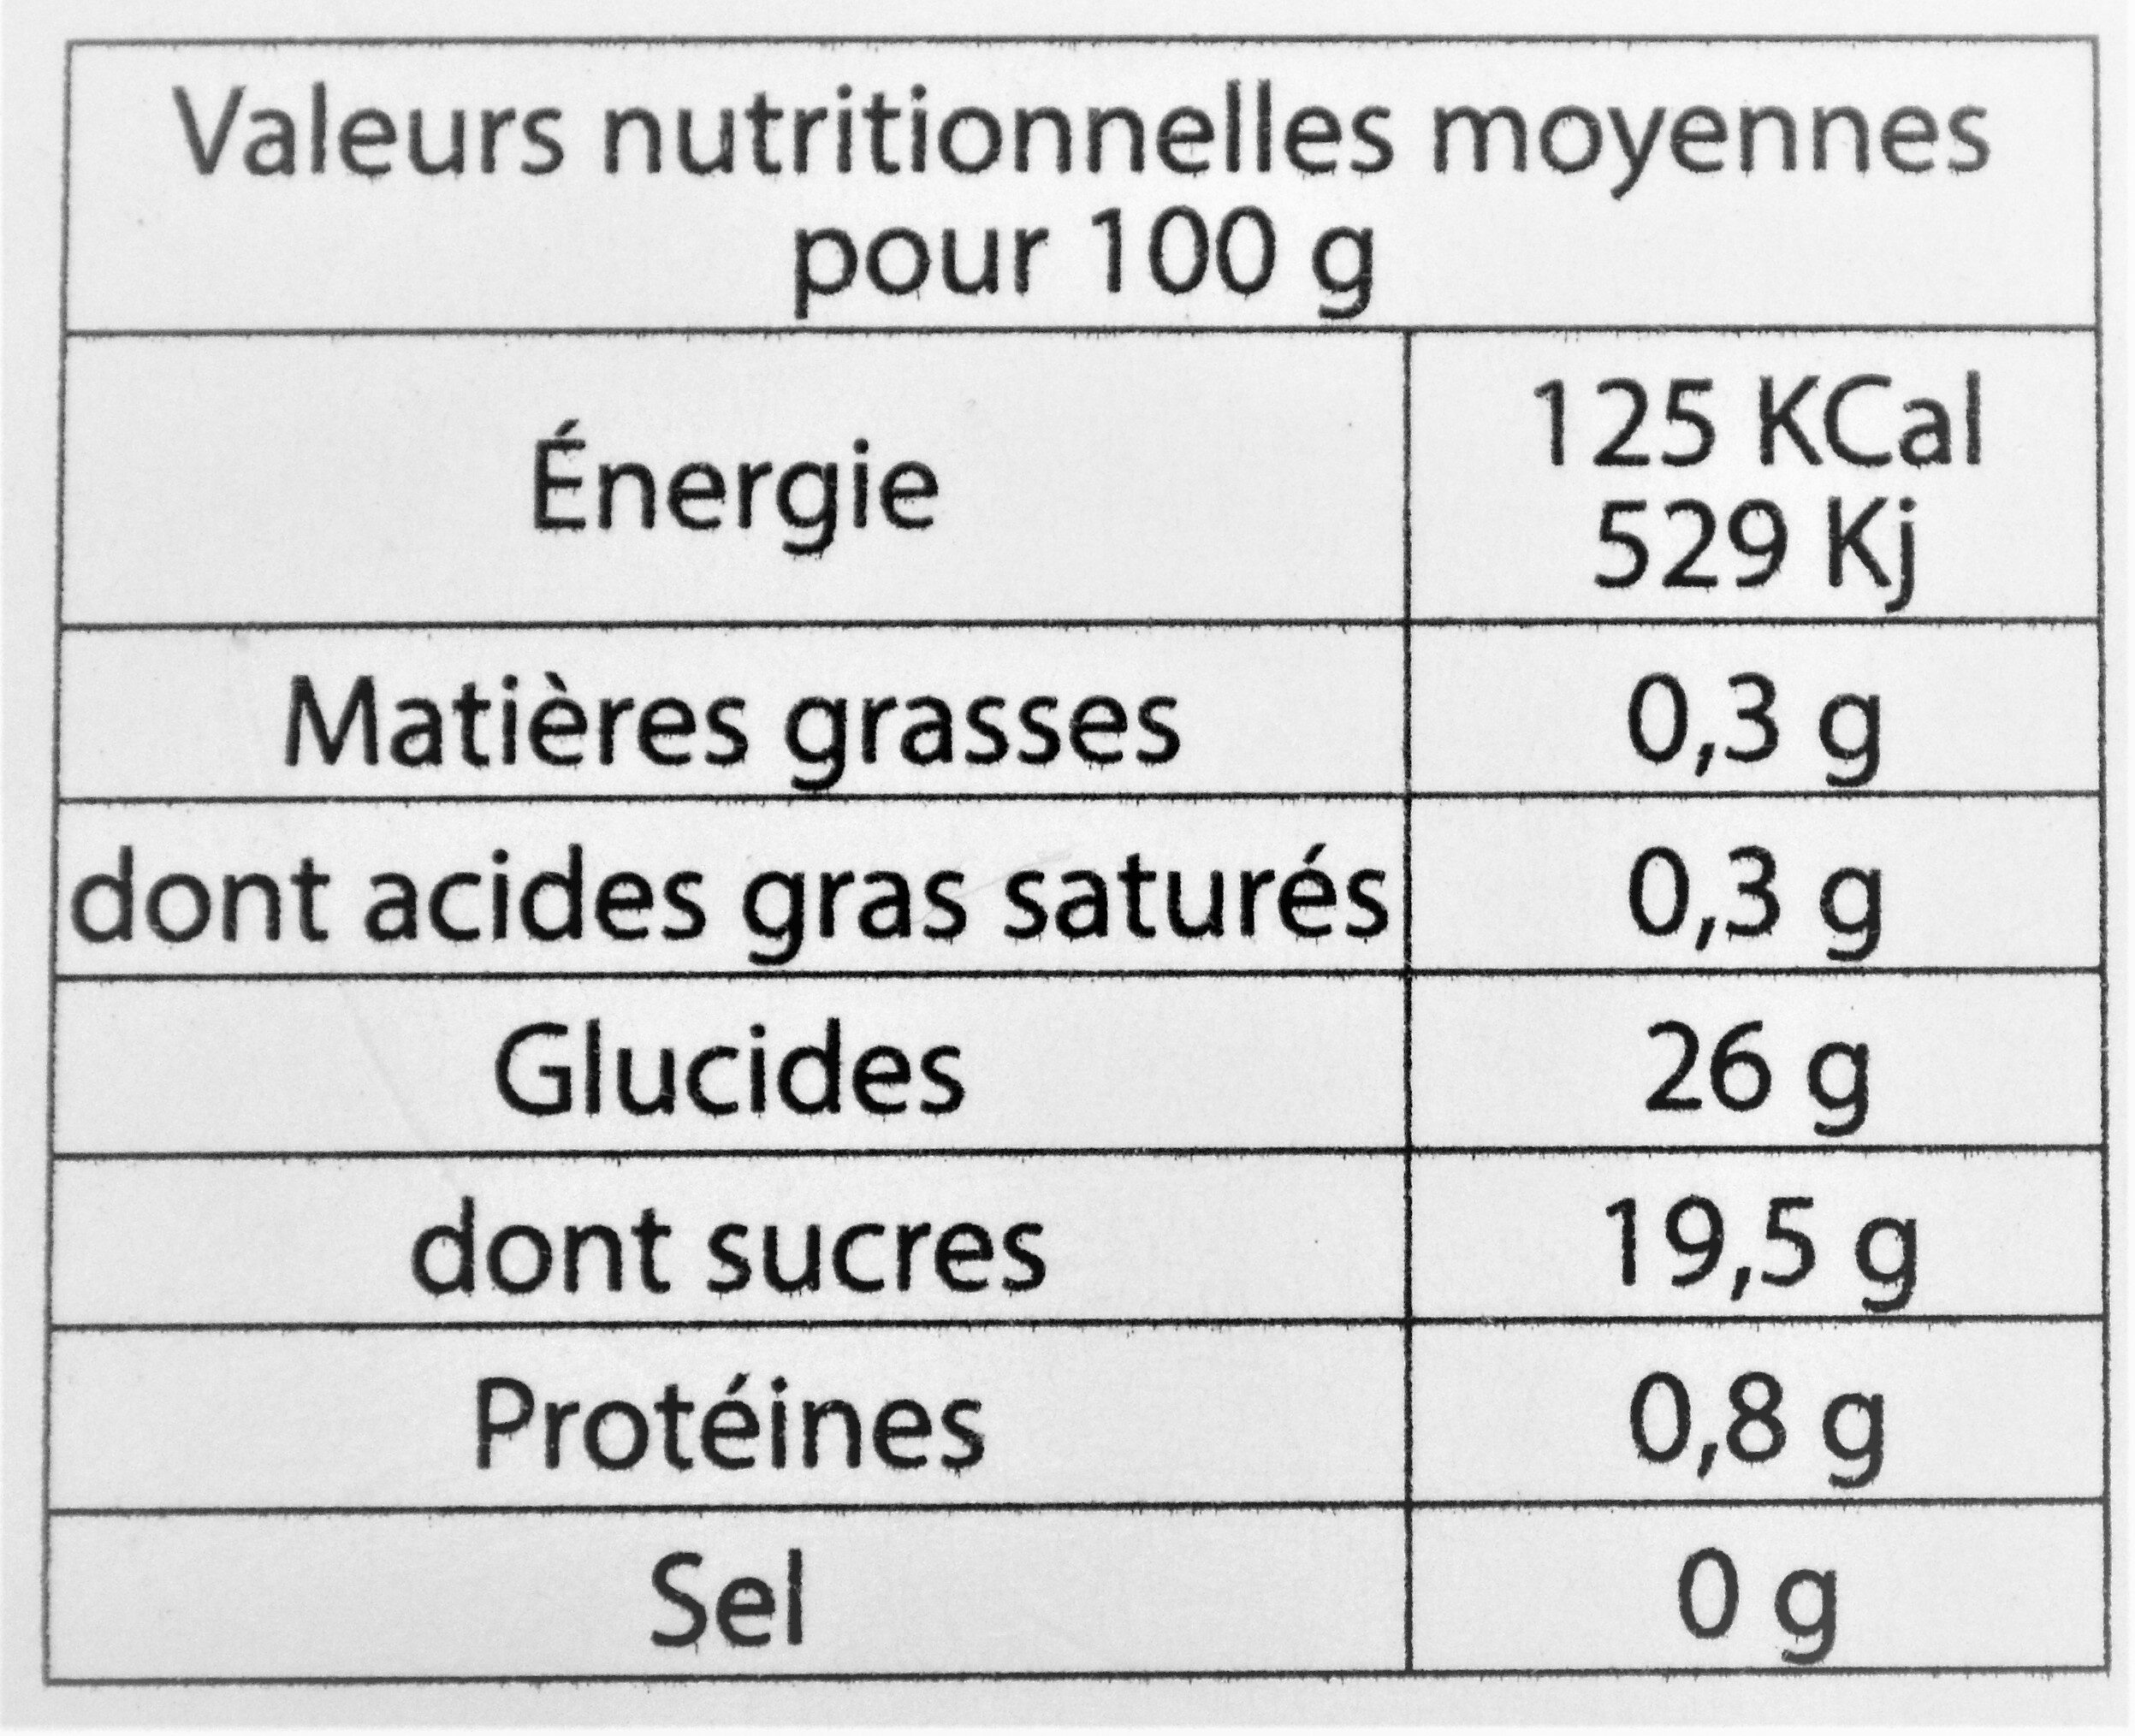 Sorbet Eau de vie de Myrte - Información nutricional - fr